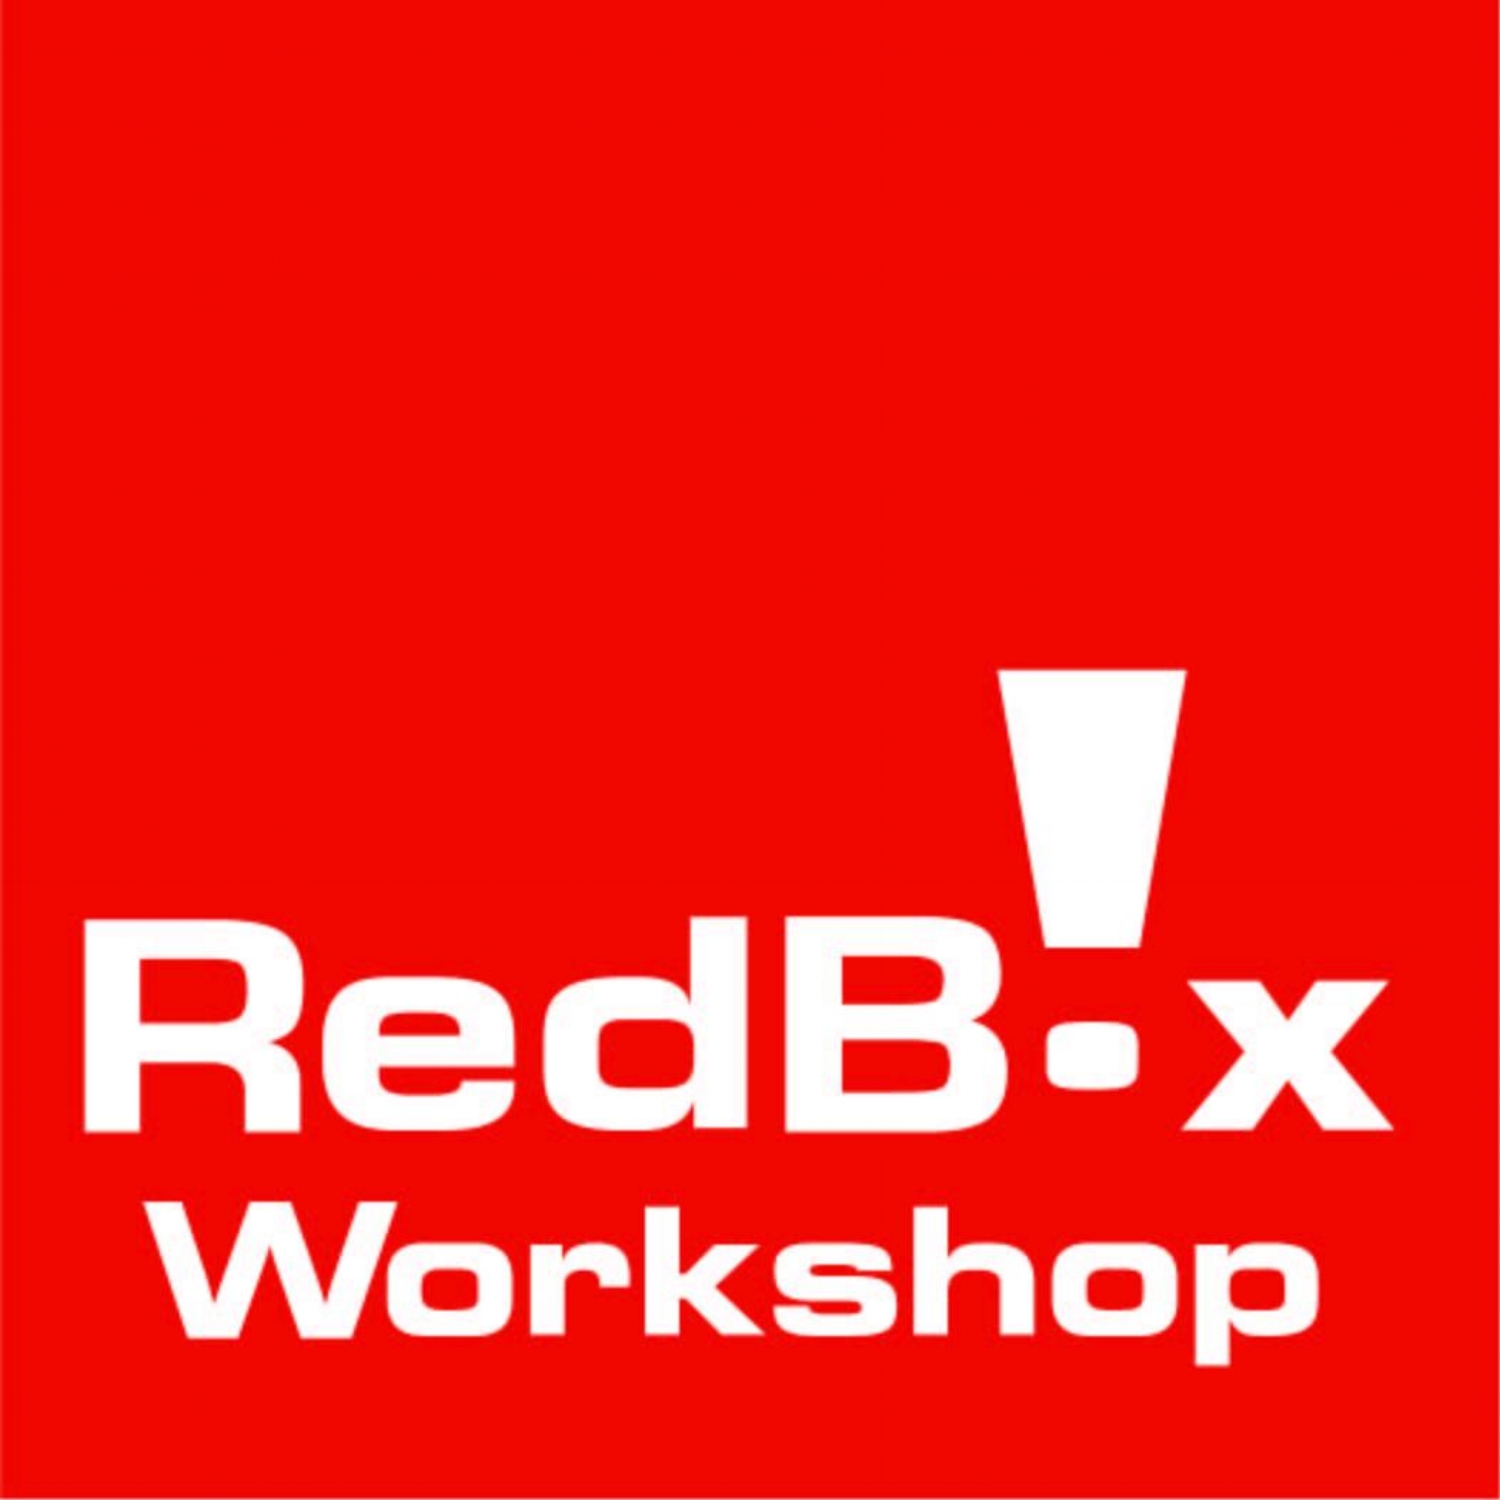  RedBox Workshop